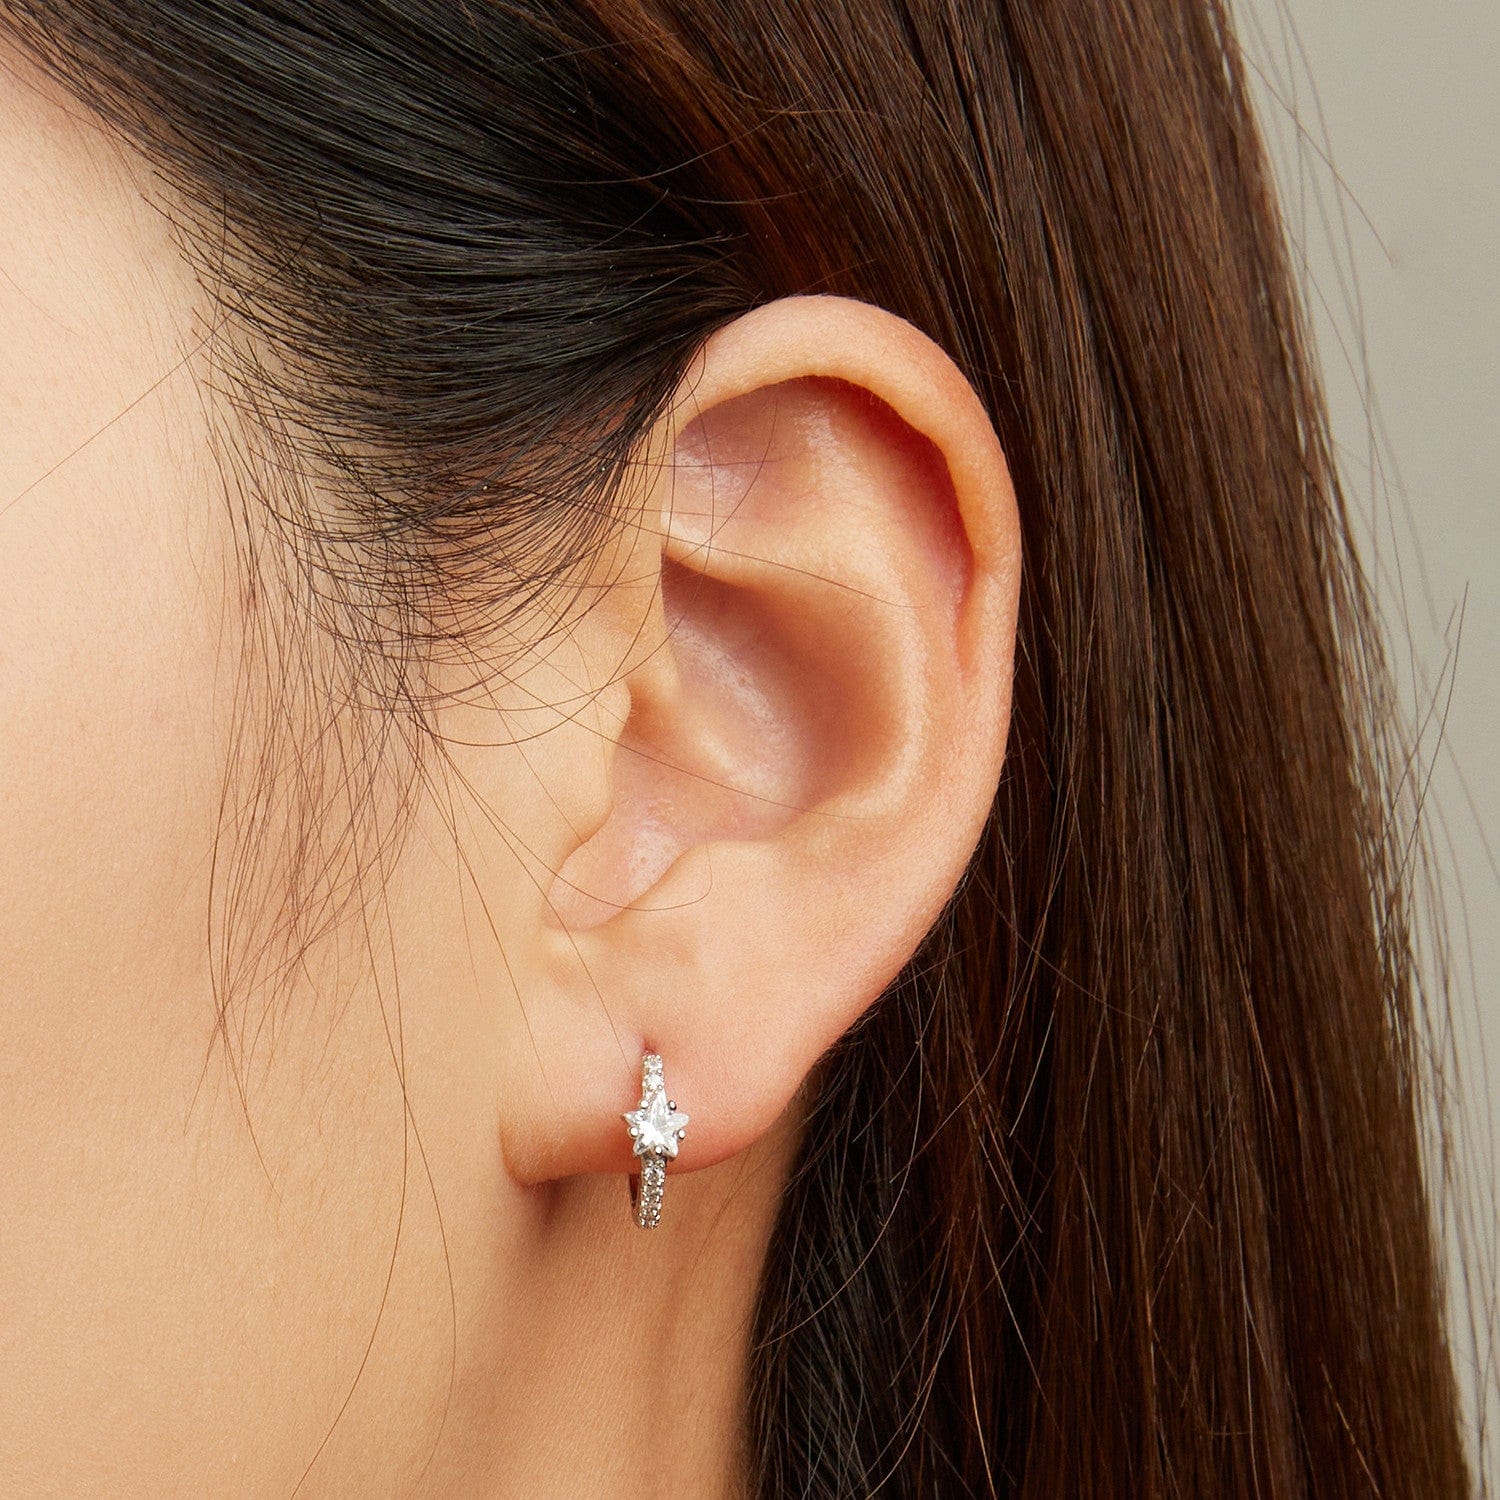 jewelaus Earrings Star Gem Hoop Earrings